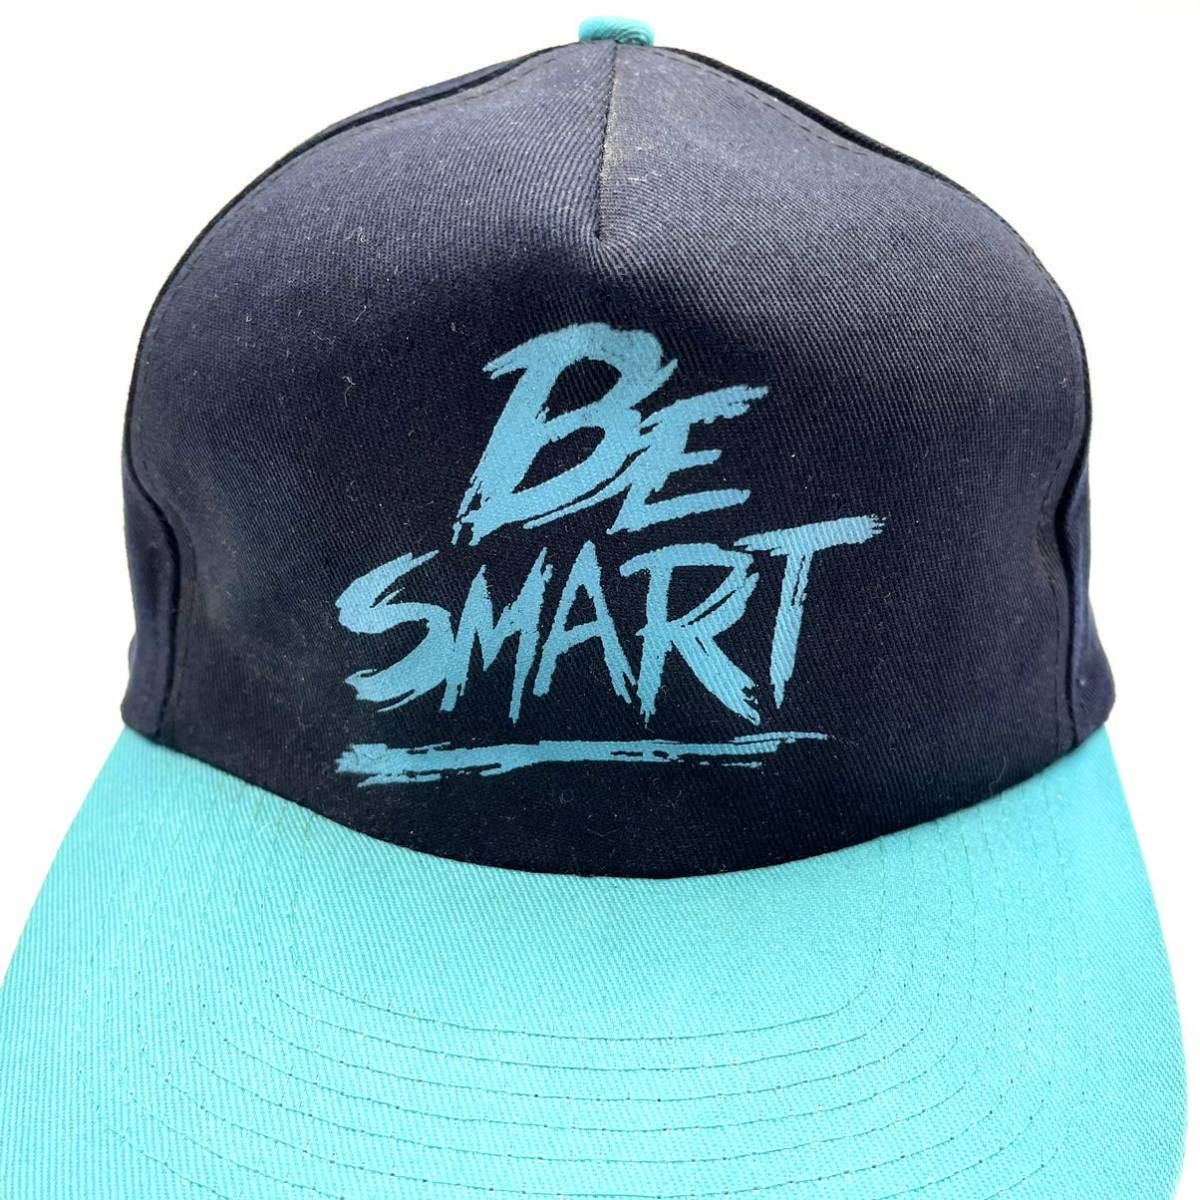 【ヴィンテージ】90s KC Cap製「BE SMART」プリントロゴ 2トーンキャップ ブラック×ミントブルー 5パネル スナップバック 90年代 帽子